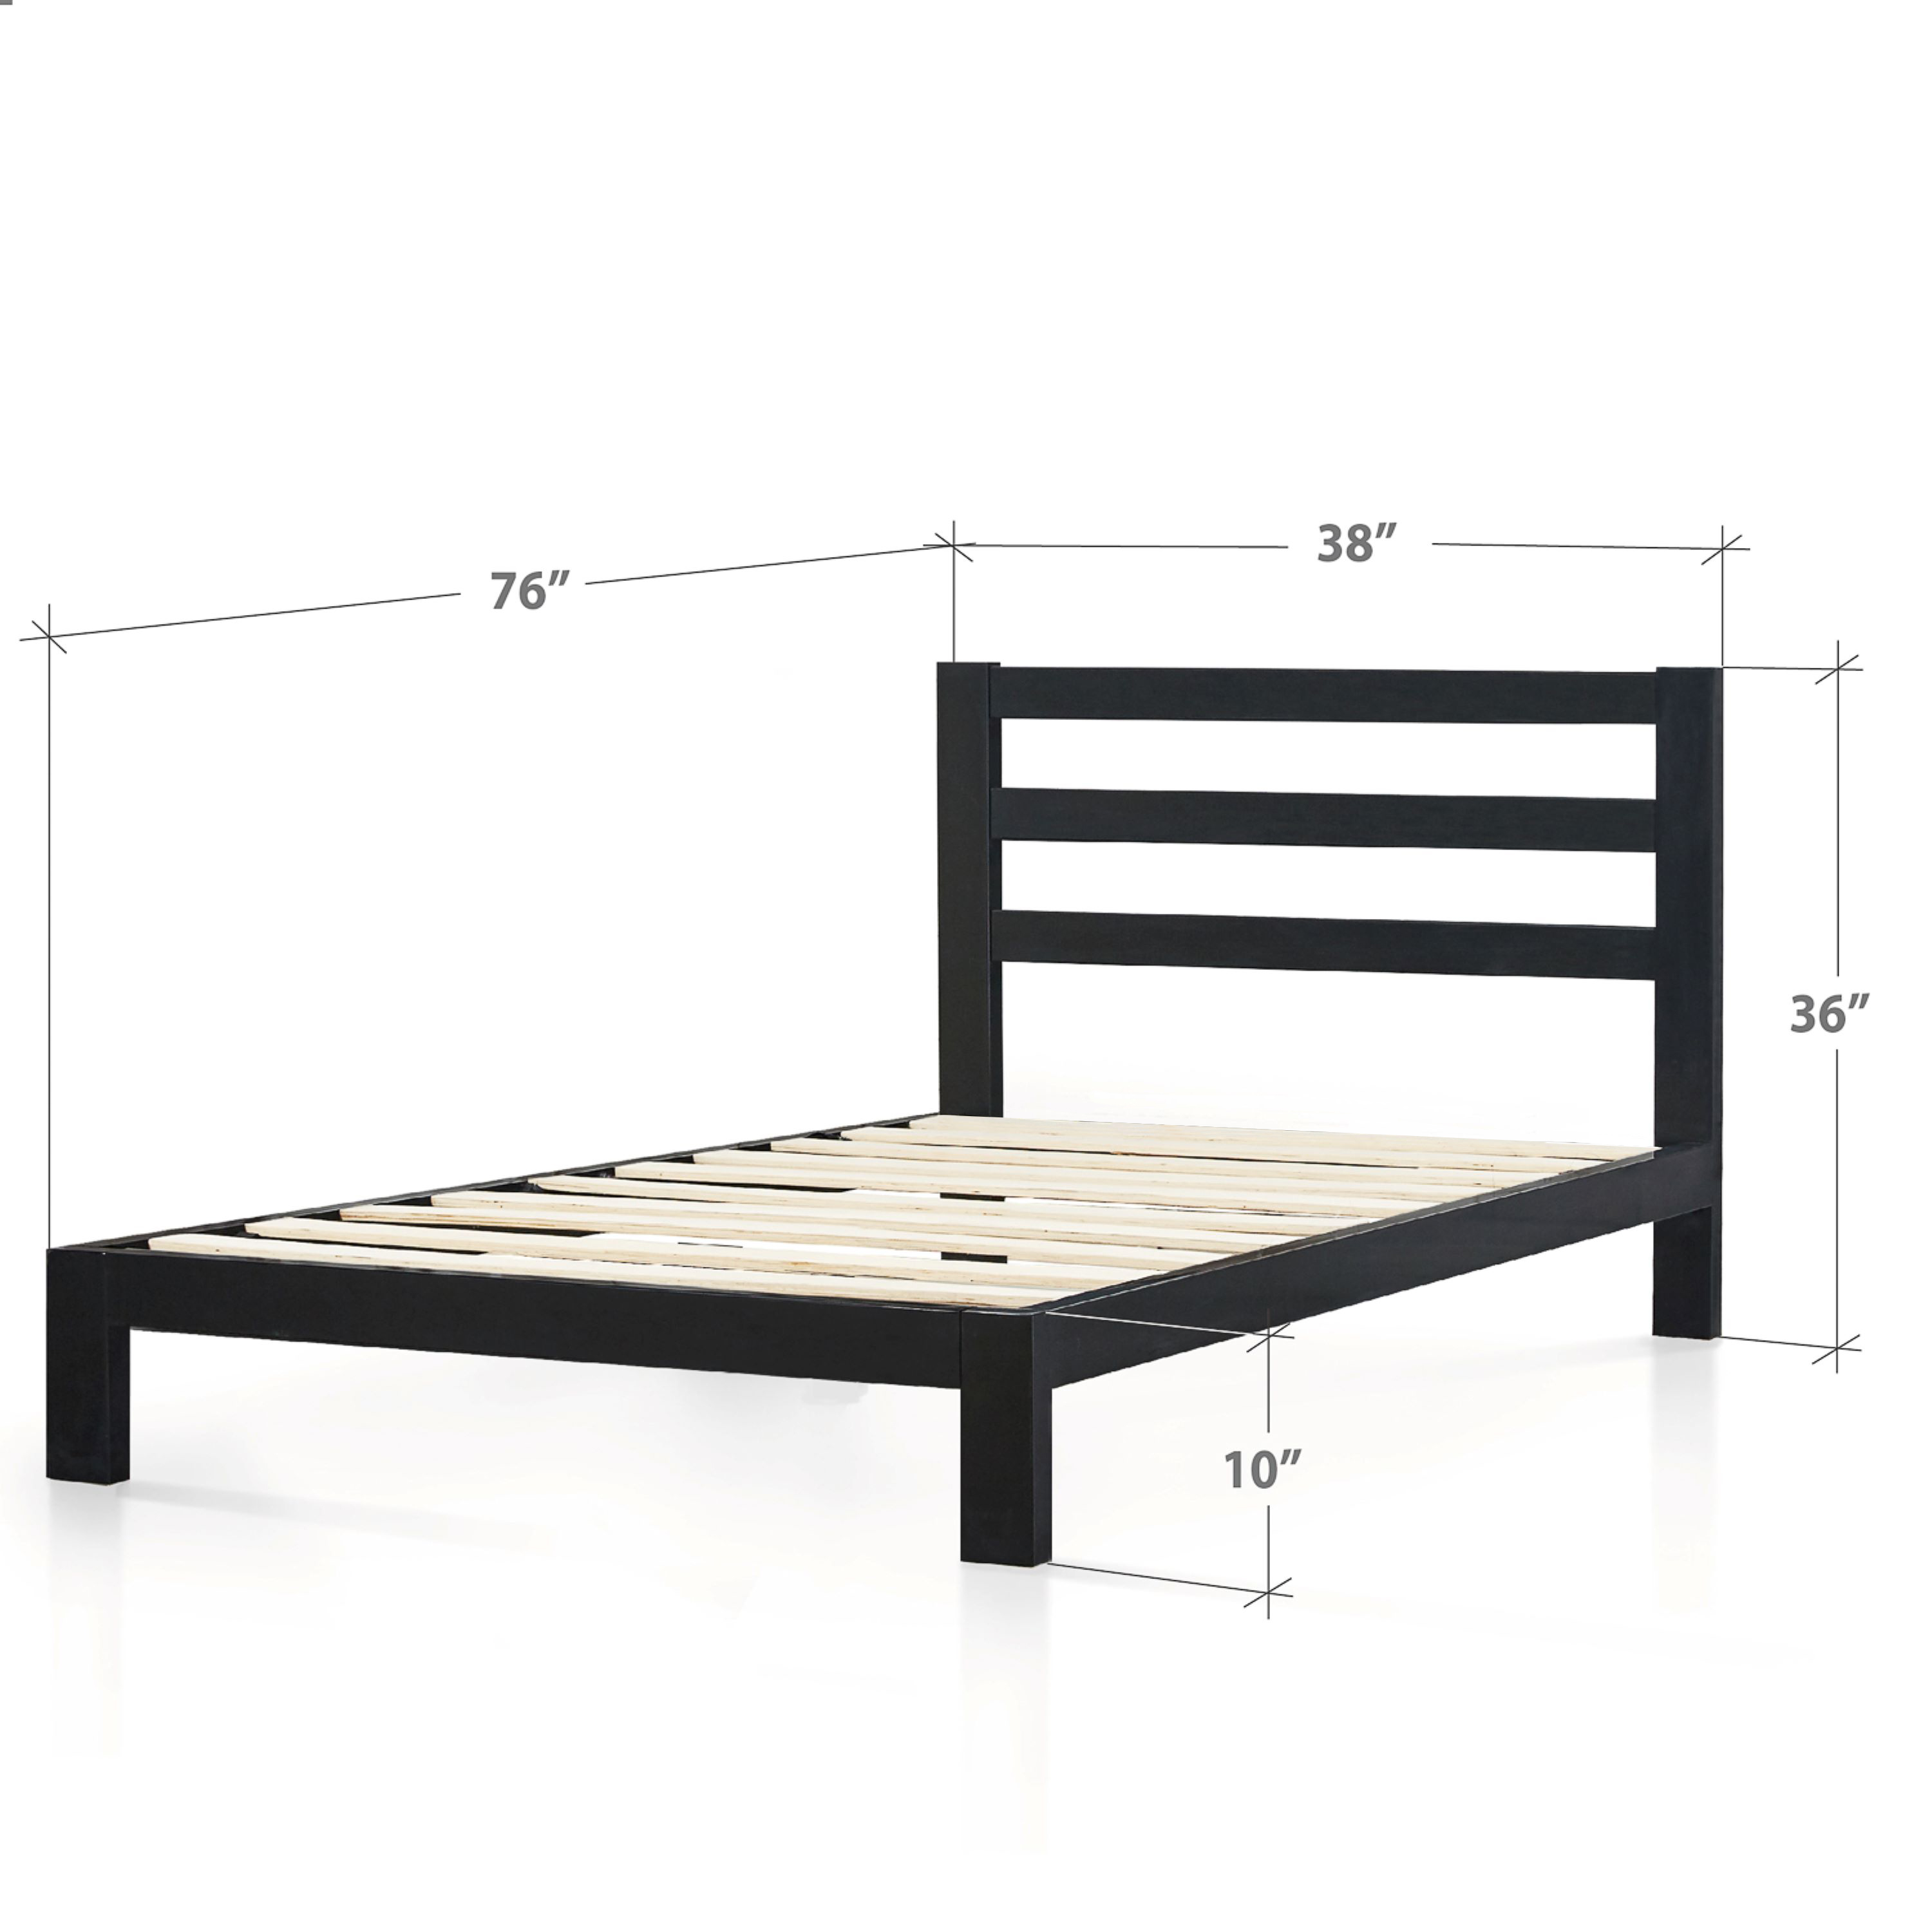 Zinus Arnav 36" Metal Platform Bed with Headboard, Twin - image 4 of 10